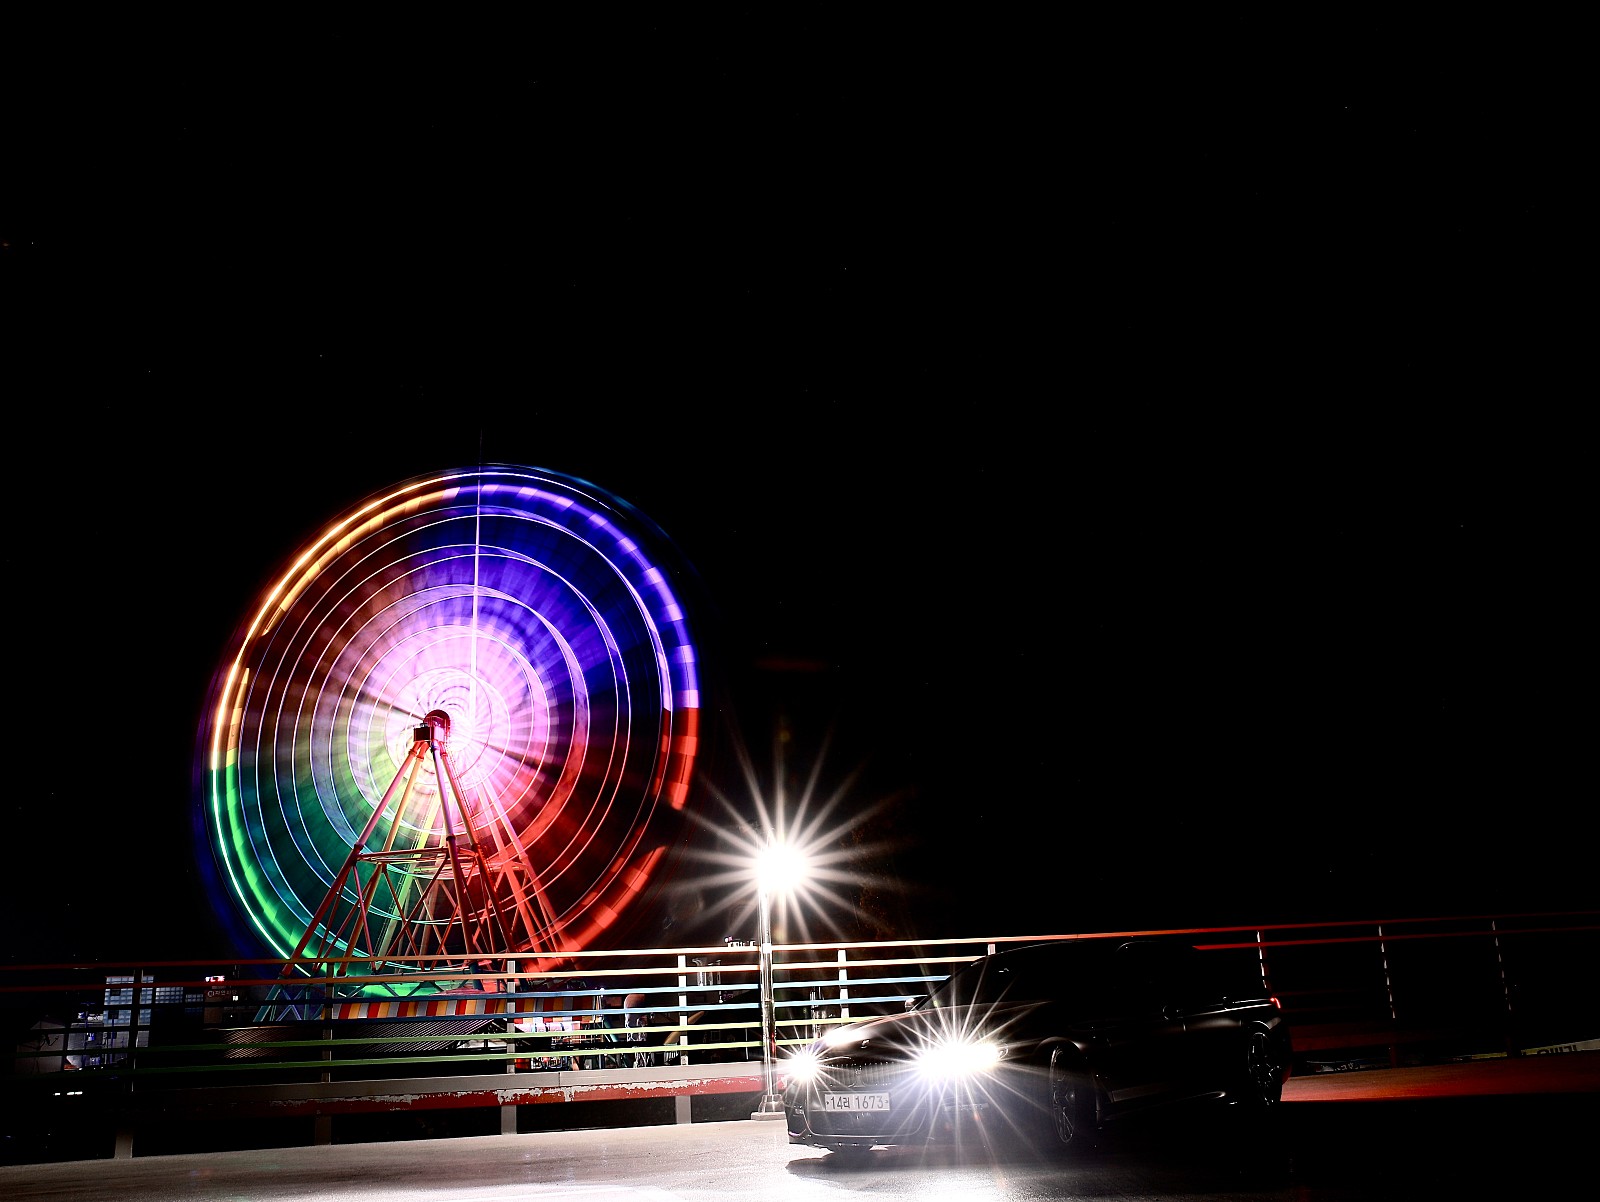 바퀴, 하늘, 야외, 타다이(가) 표시된 사진

자동 생성된 설명